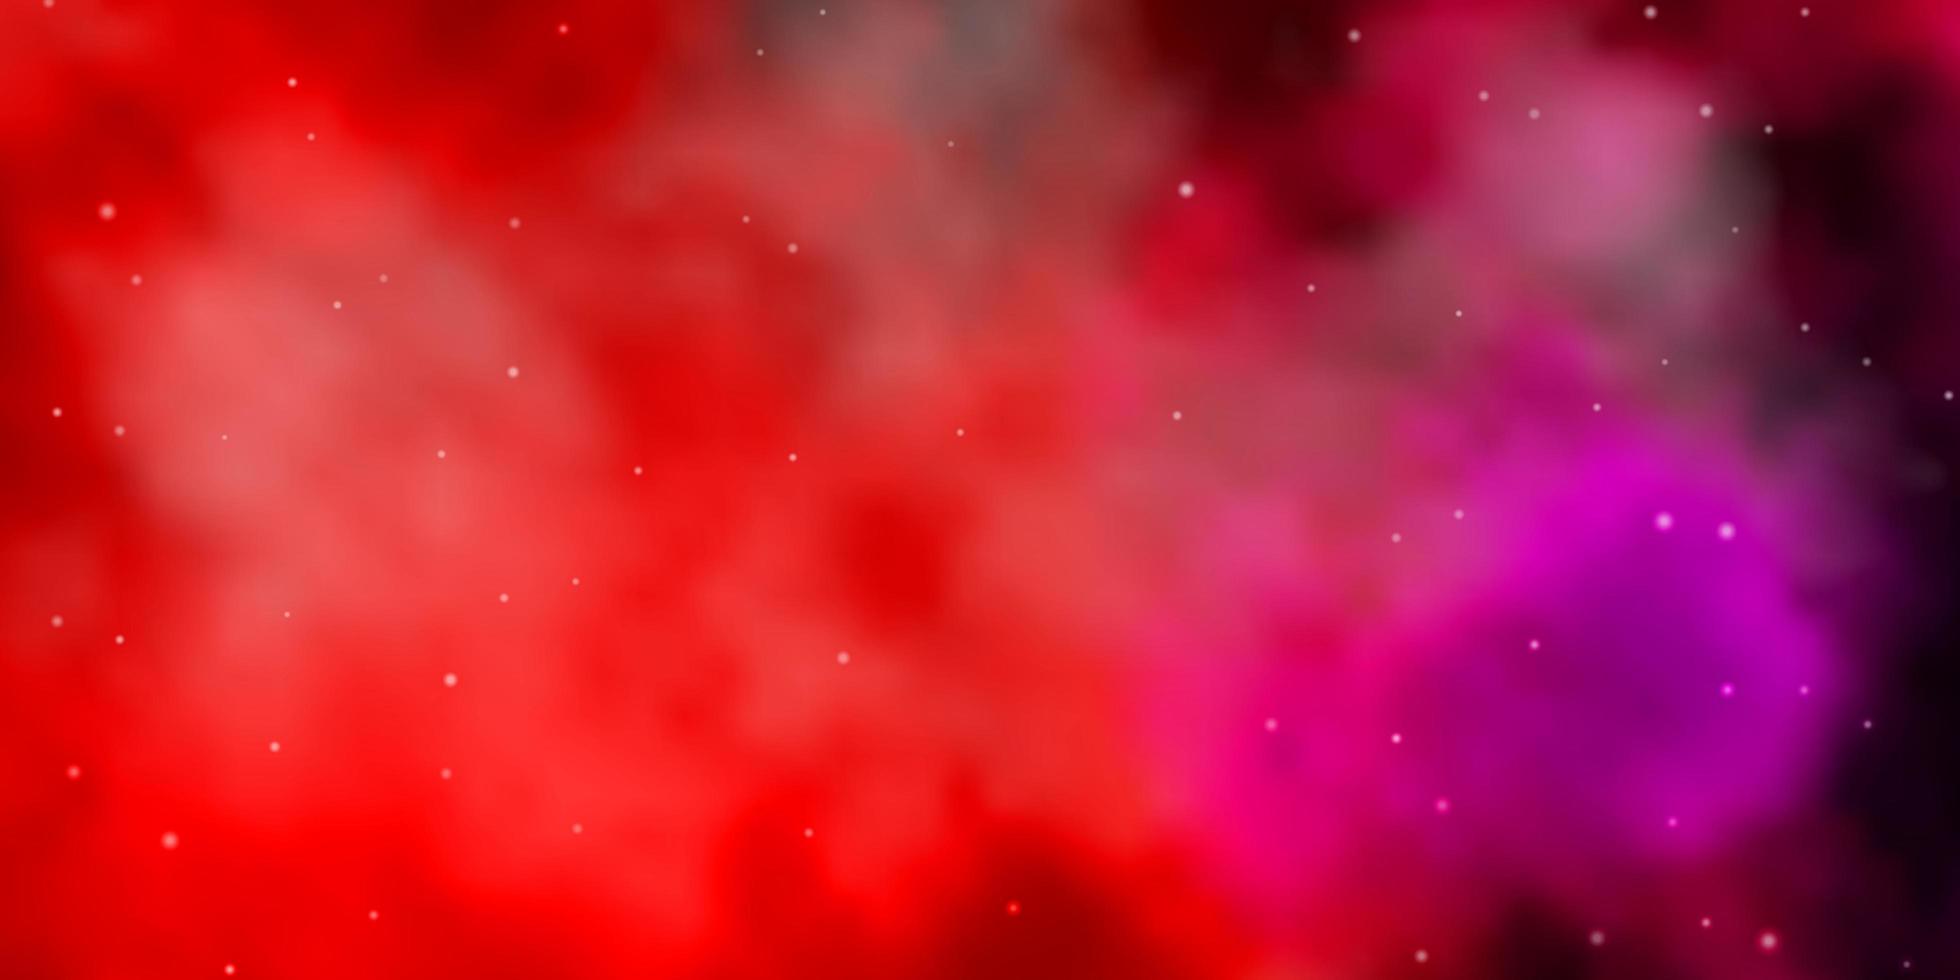 viola scuro, trama vettoriale rosa con bellissime stelle.